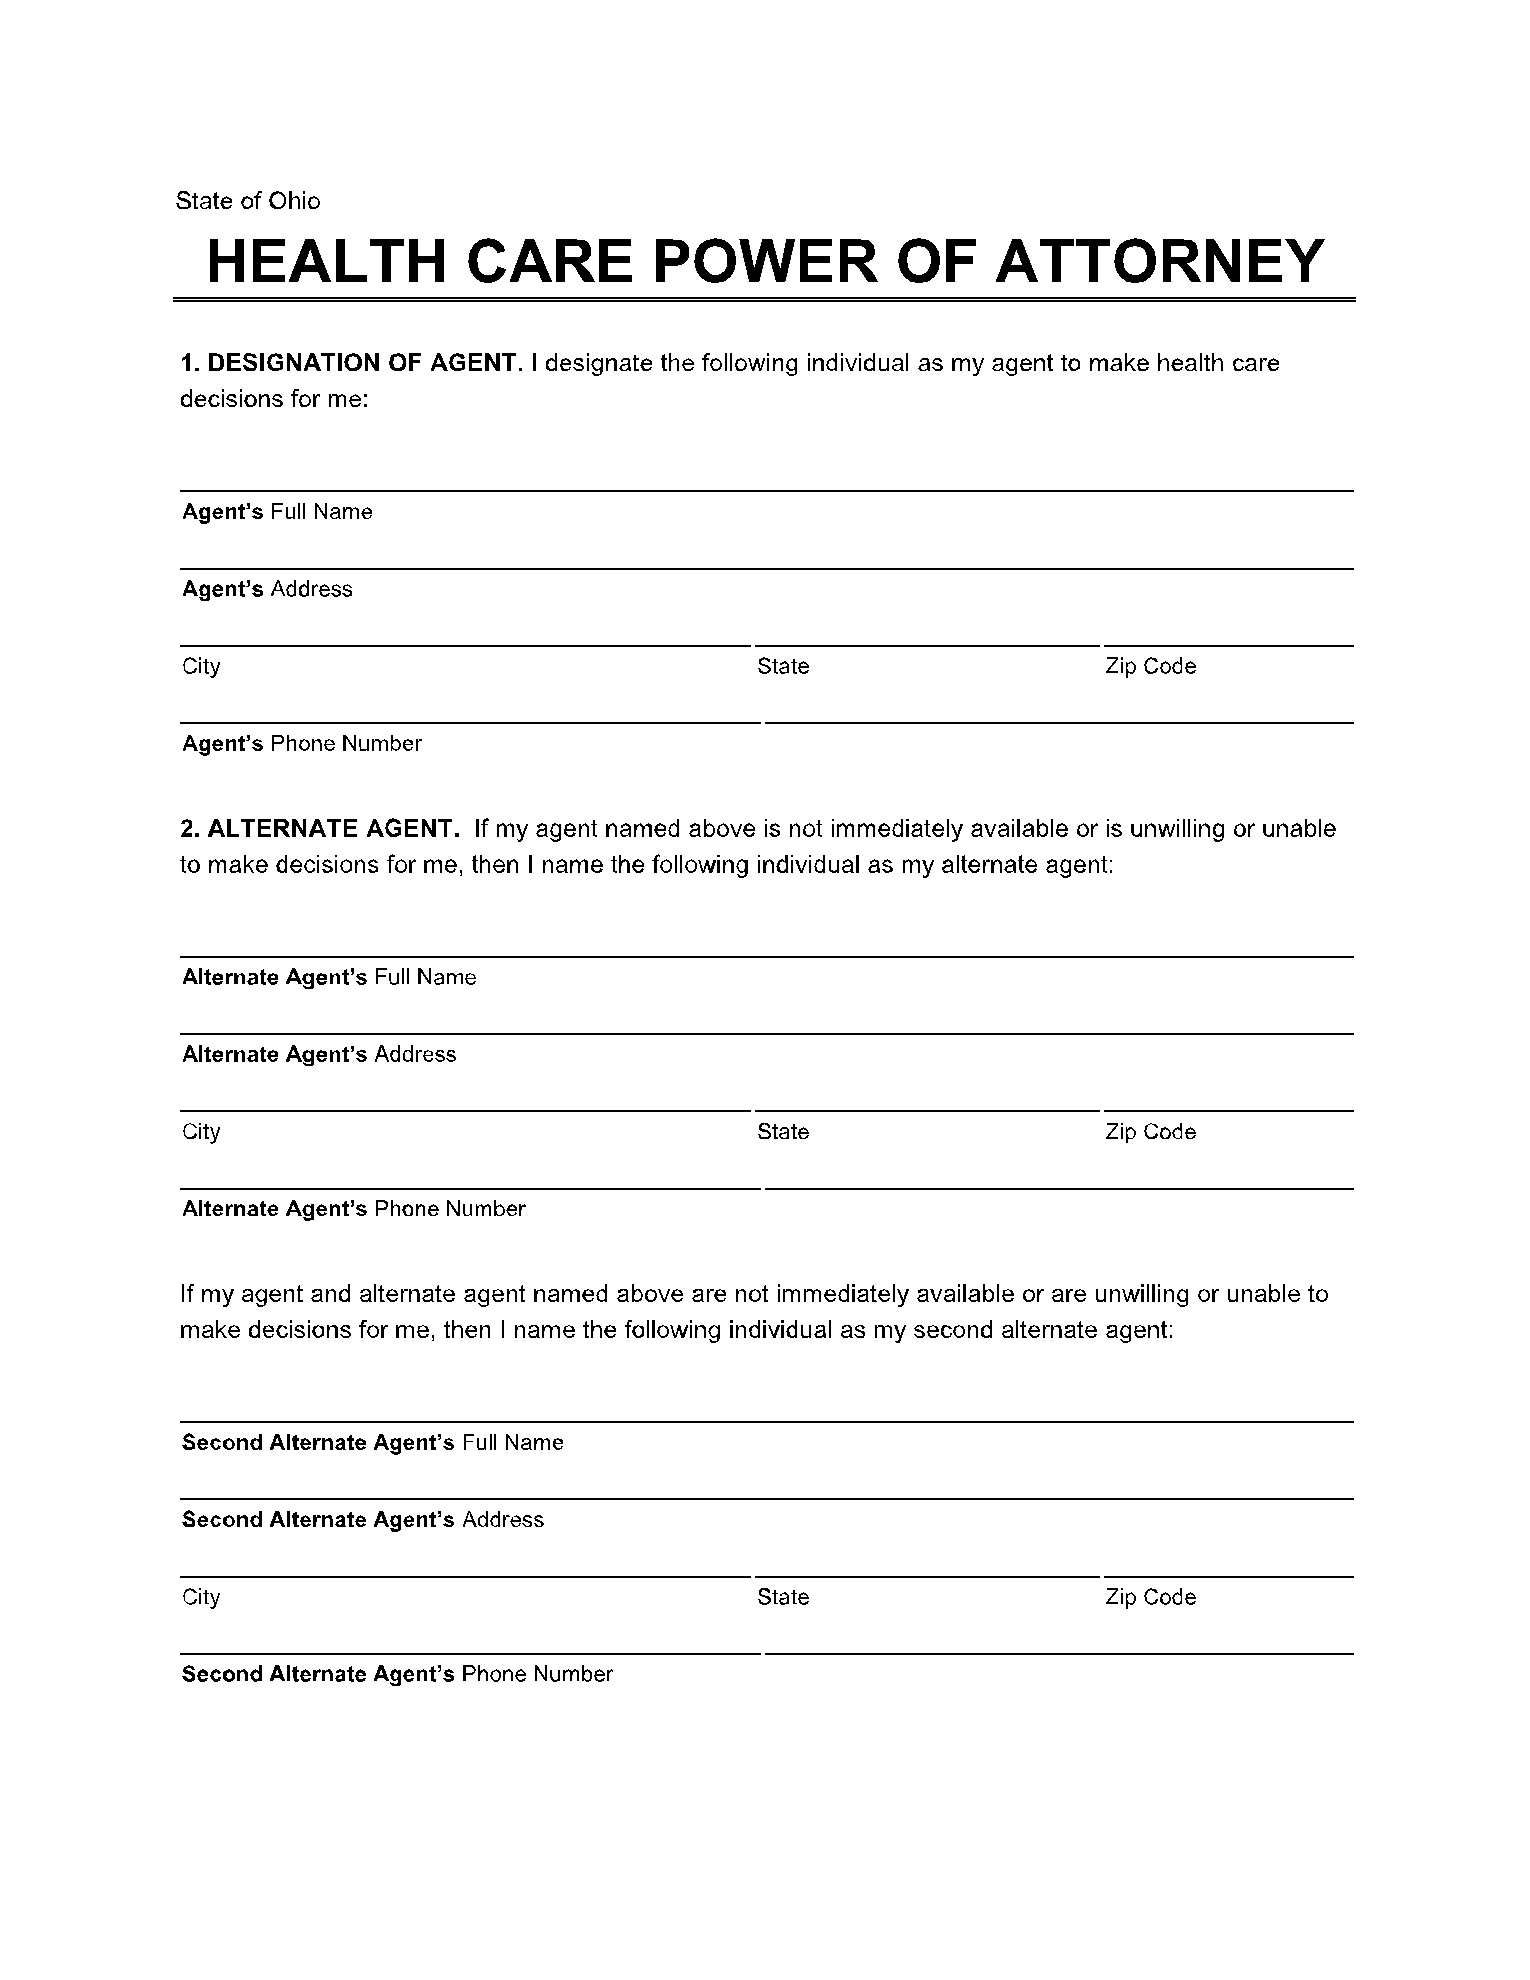 Ohio Healthcare Power of Attorney